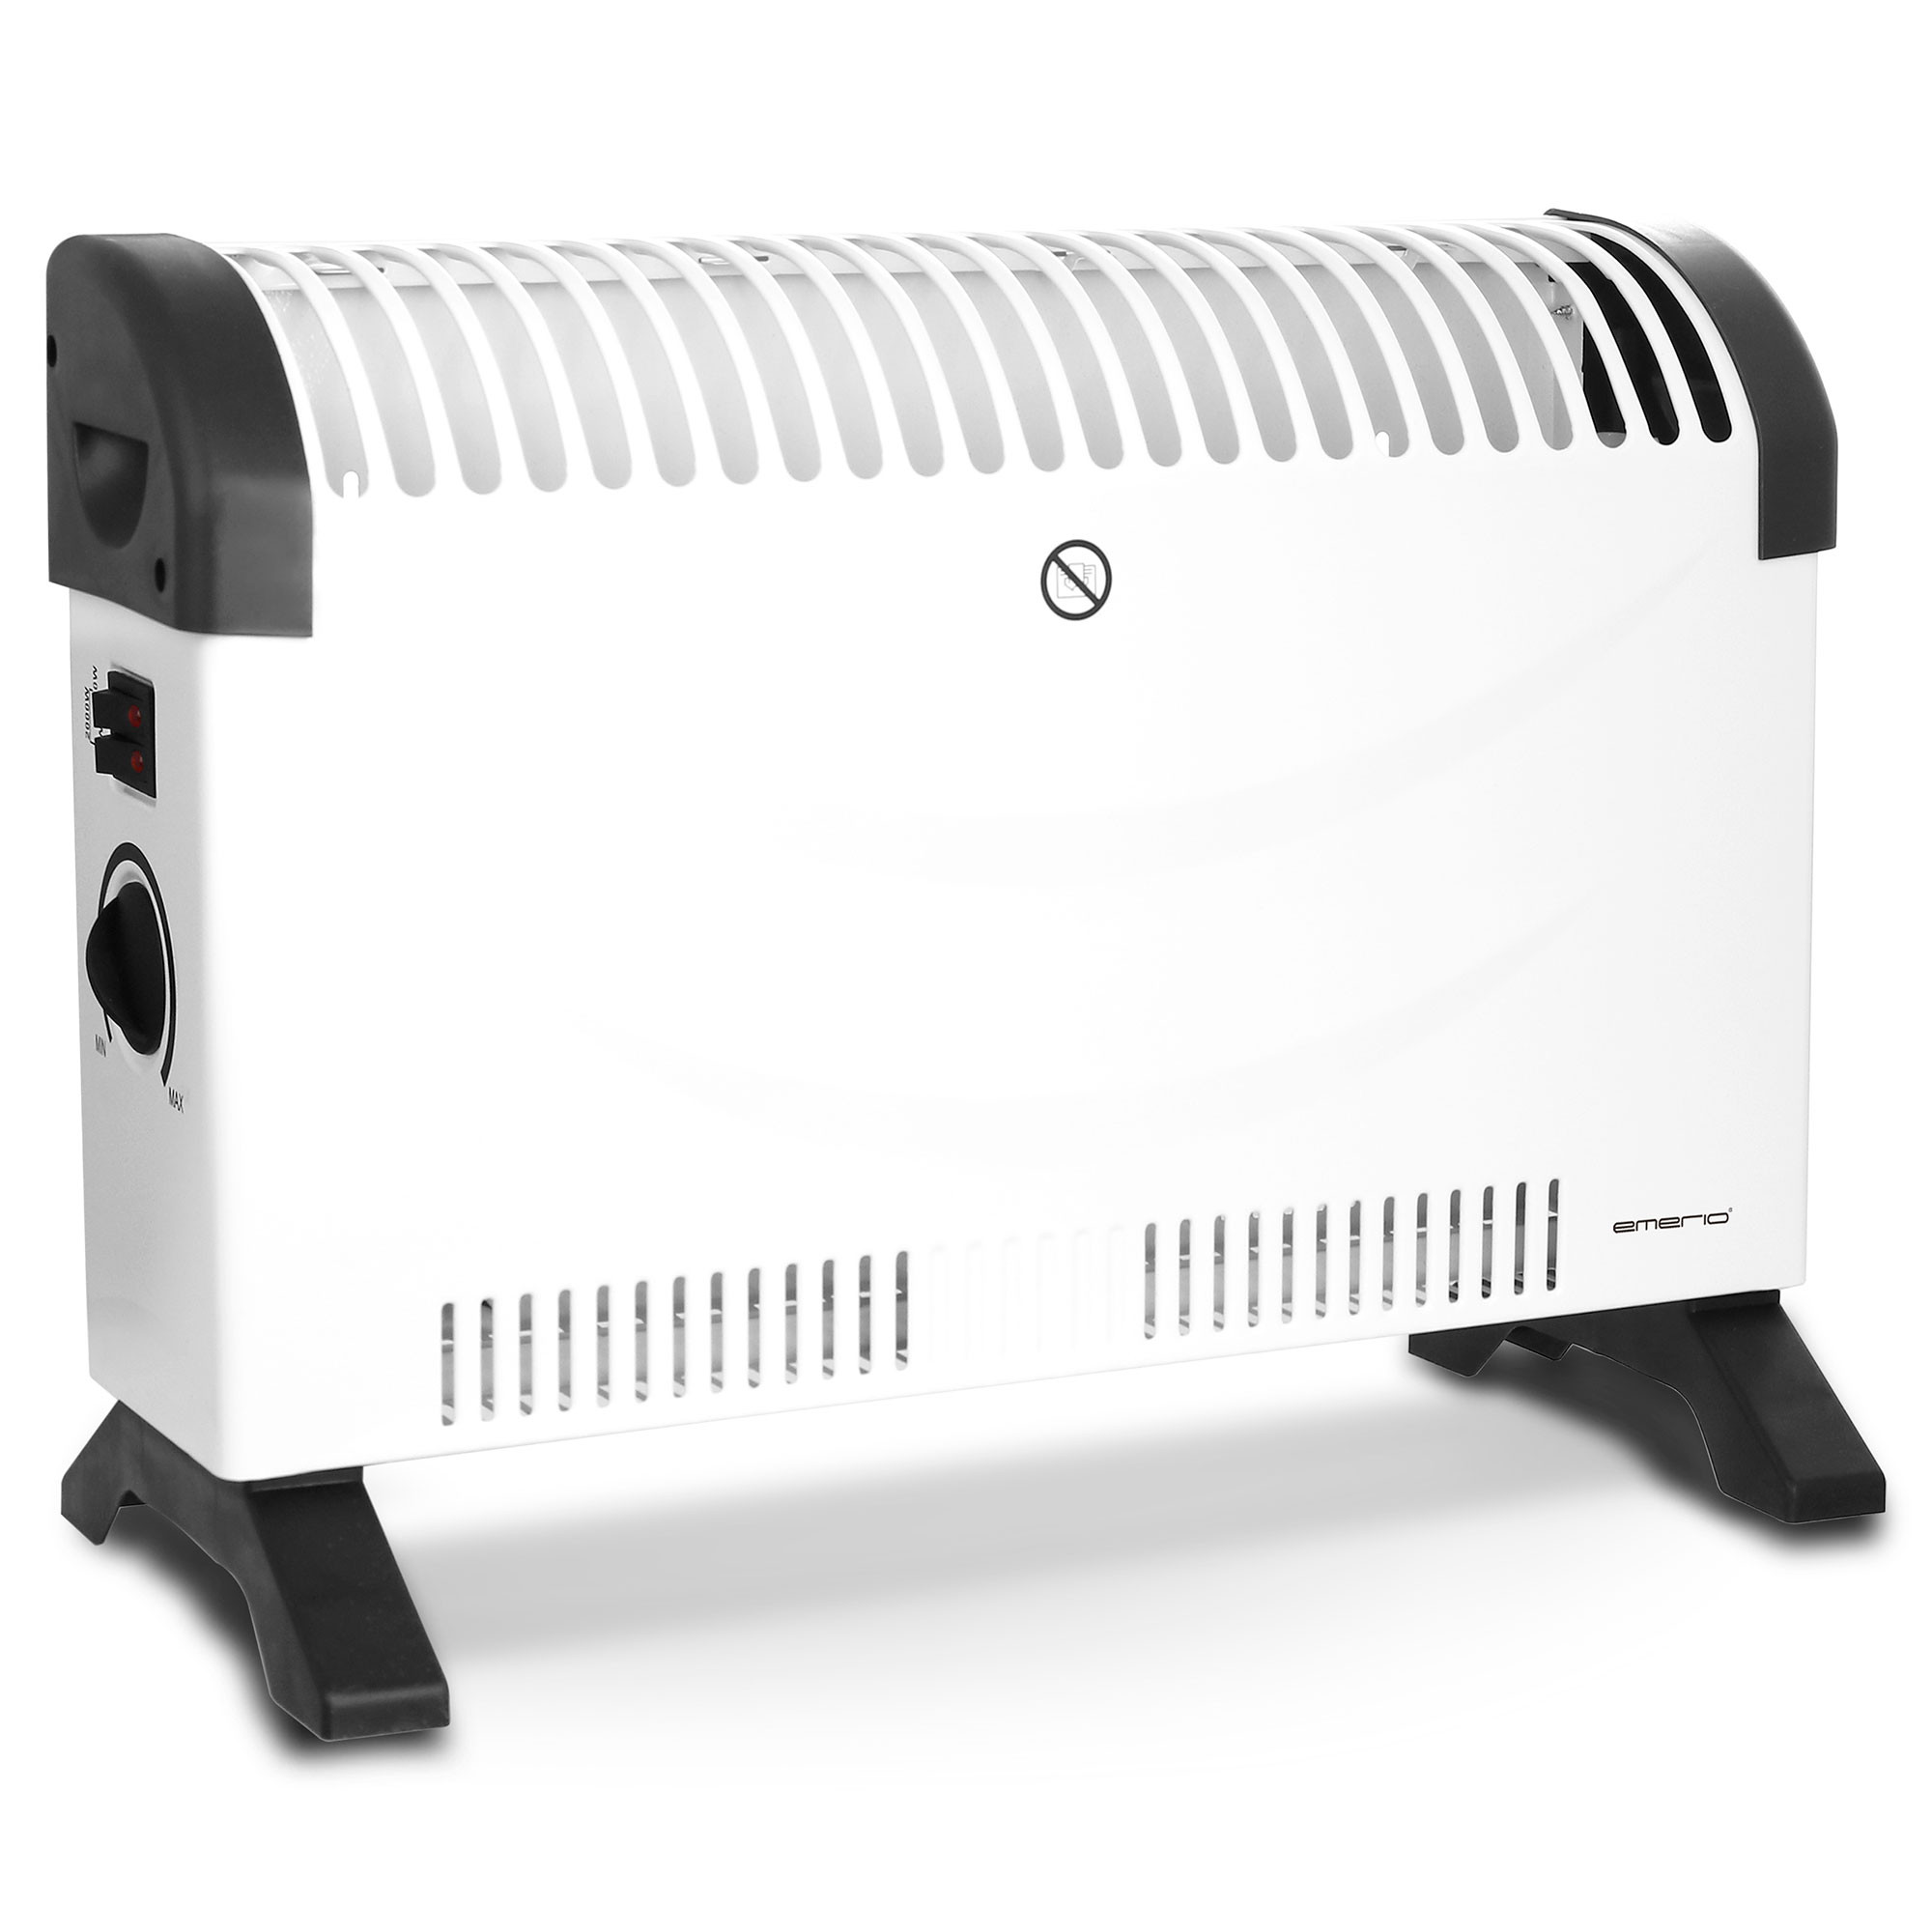 Calefactores por Aire Caliente Eléctricos 3x380V. - Refrimática